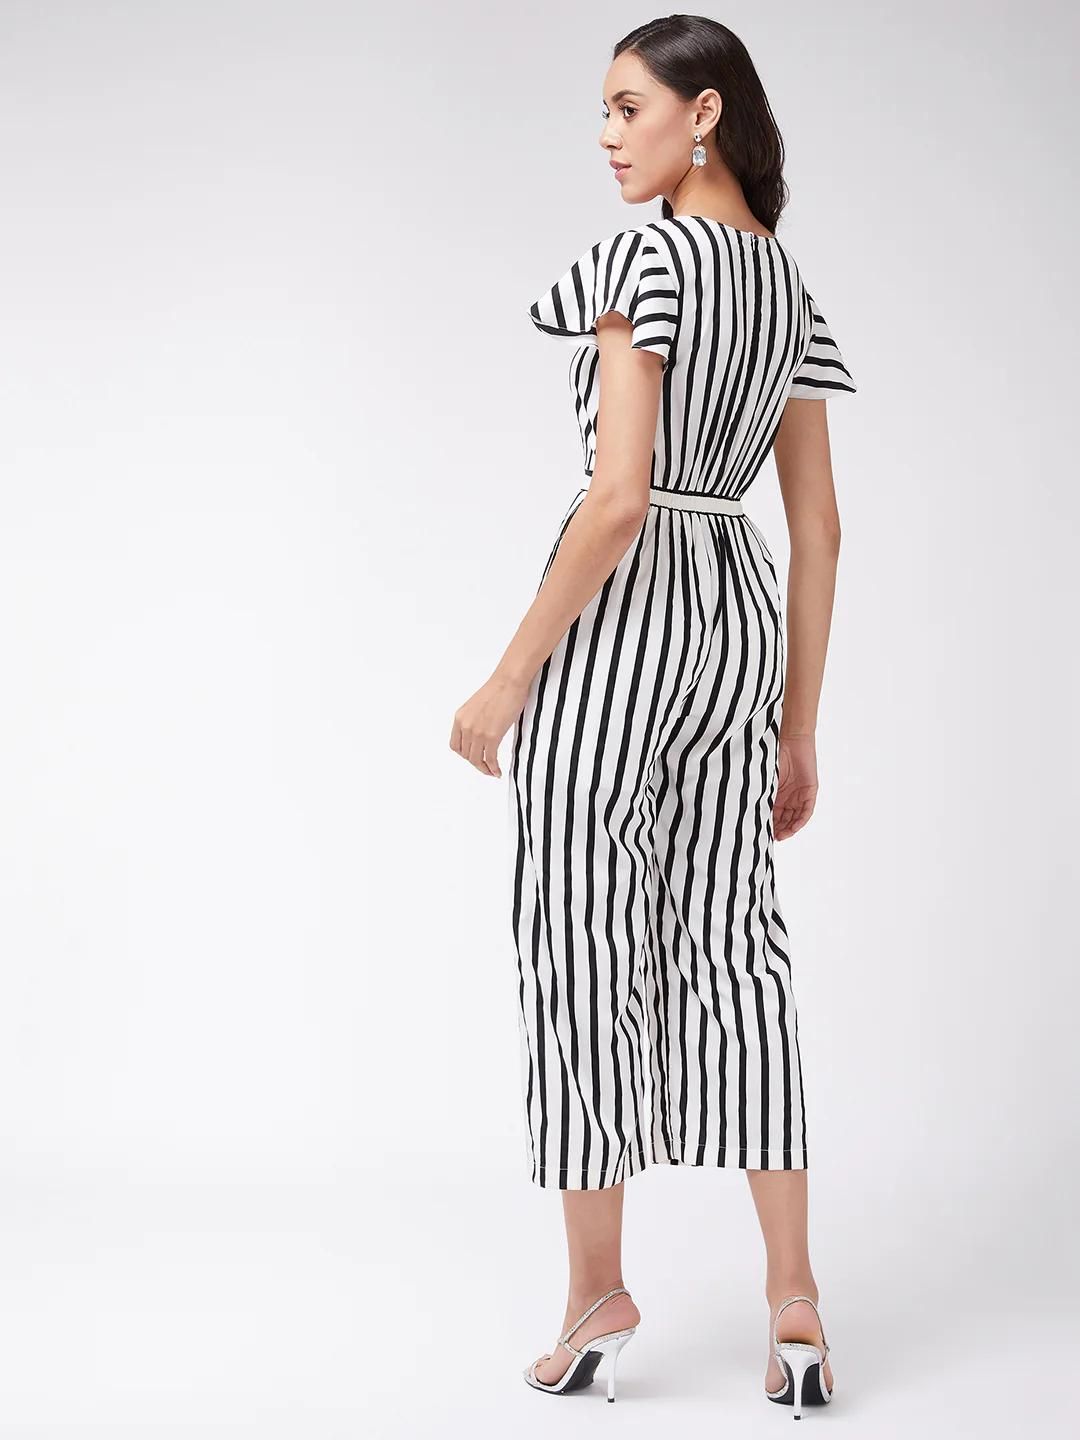 PANNKH Women's Black & White Monocromatic Stripes Jumpsuit